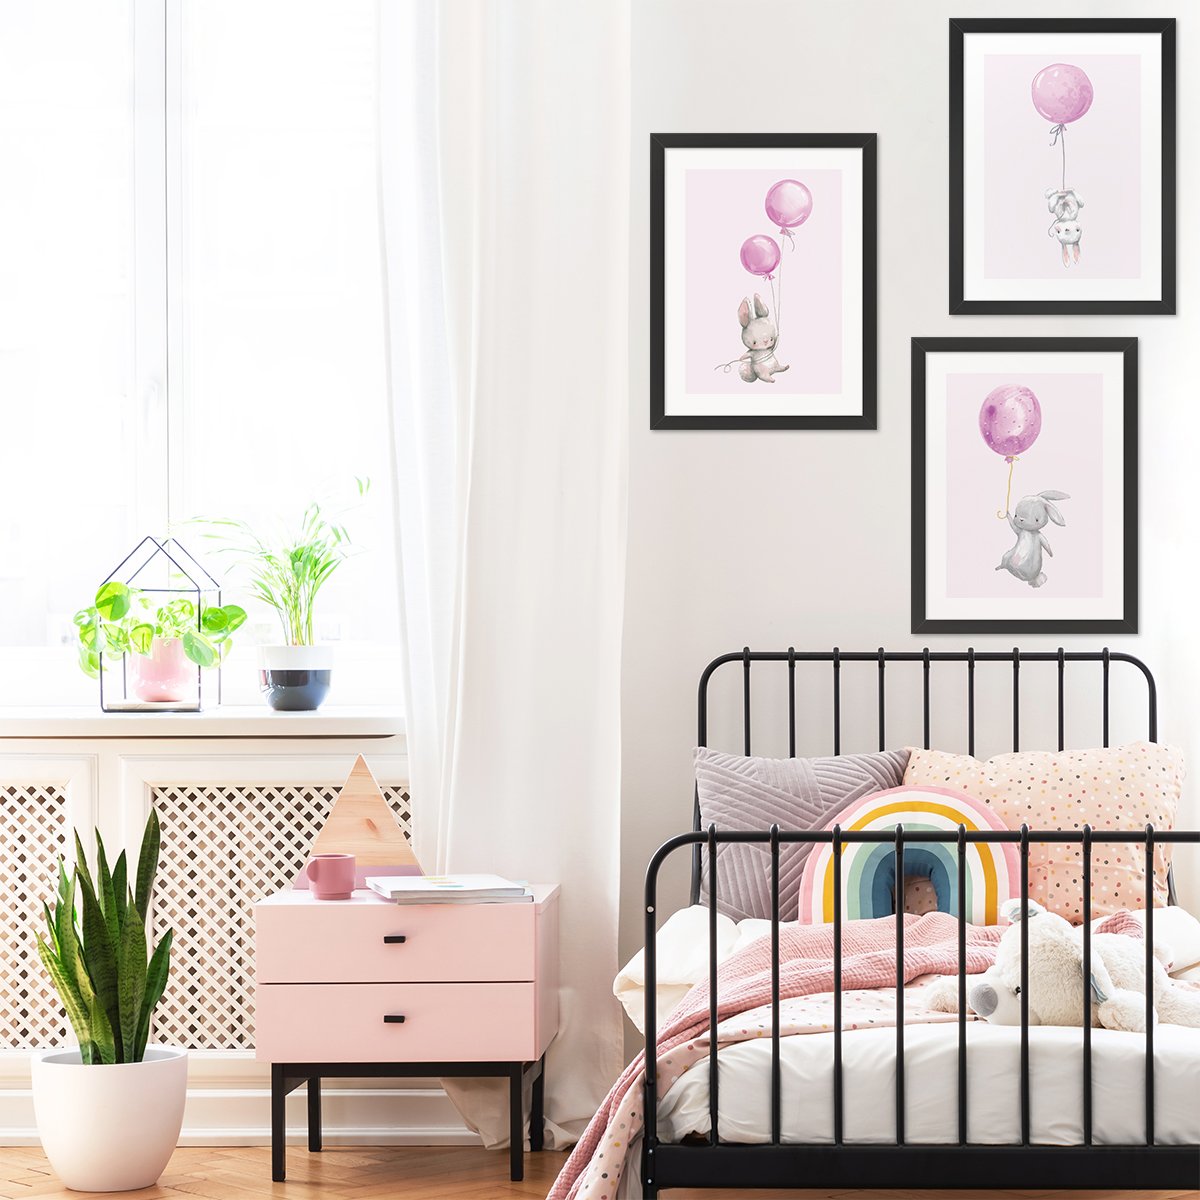 Trzy różowe plakaty do pokoju dzieci z królikami i balonami z czarnymi ramkami powieszone nad łóżkiem w pokoju dziecięcym - inspirację na ozdobienie pustych ścian pokoju dziewczynki #kolor_rozowy